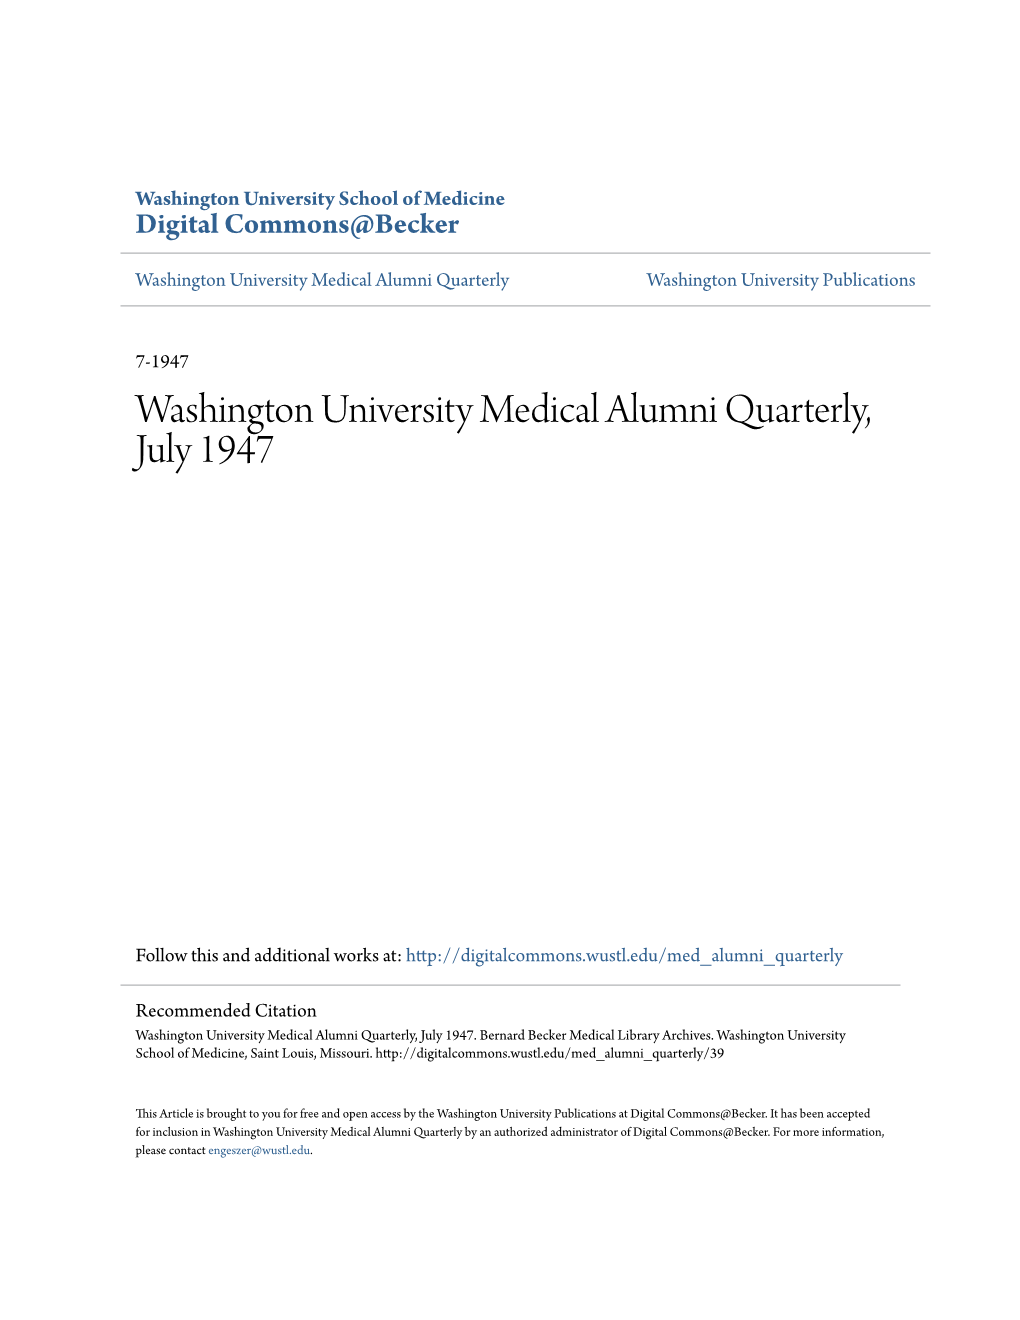 Washington University Medical Alumni Quarterly, July 1947